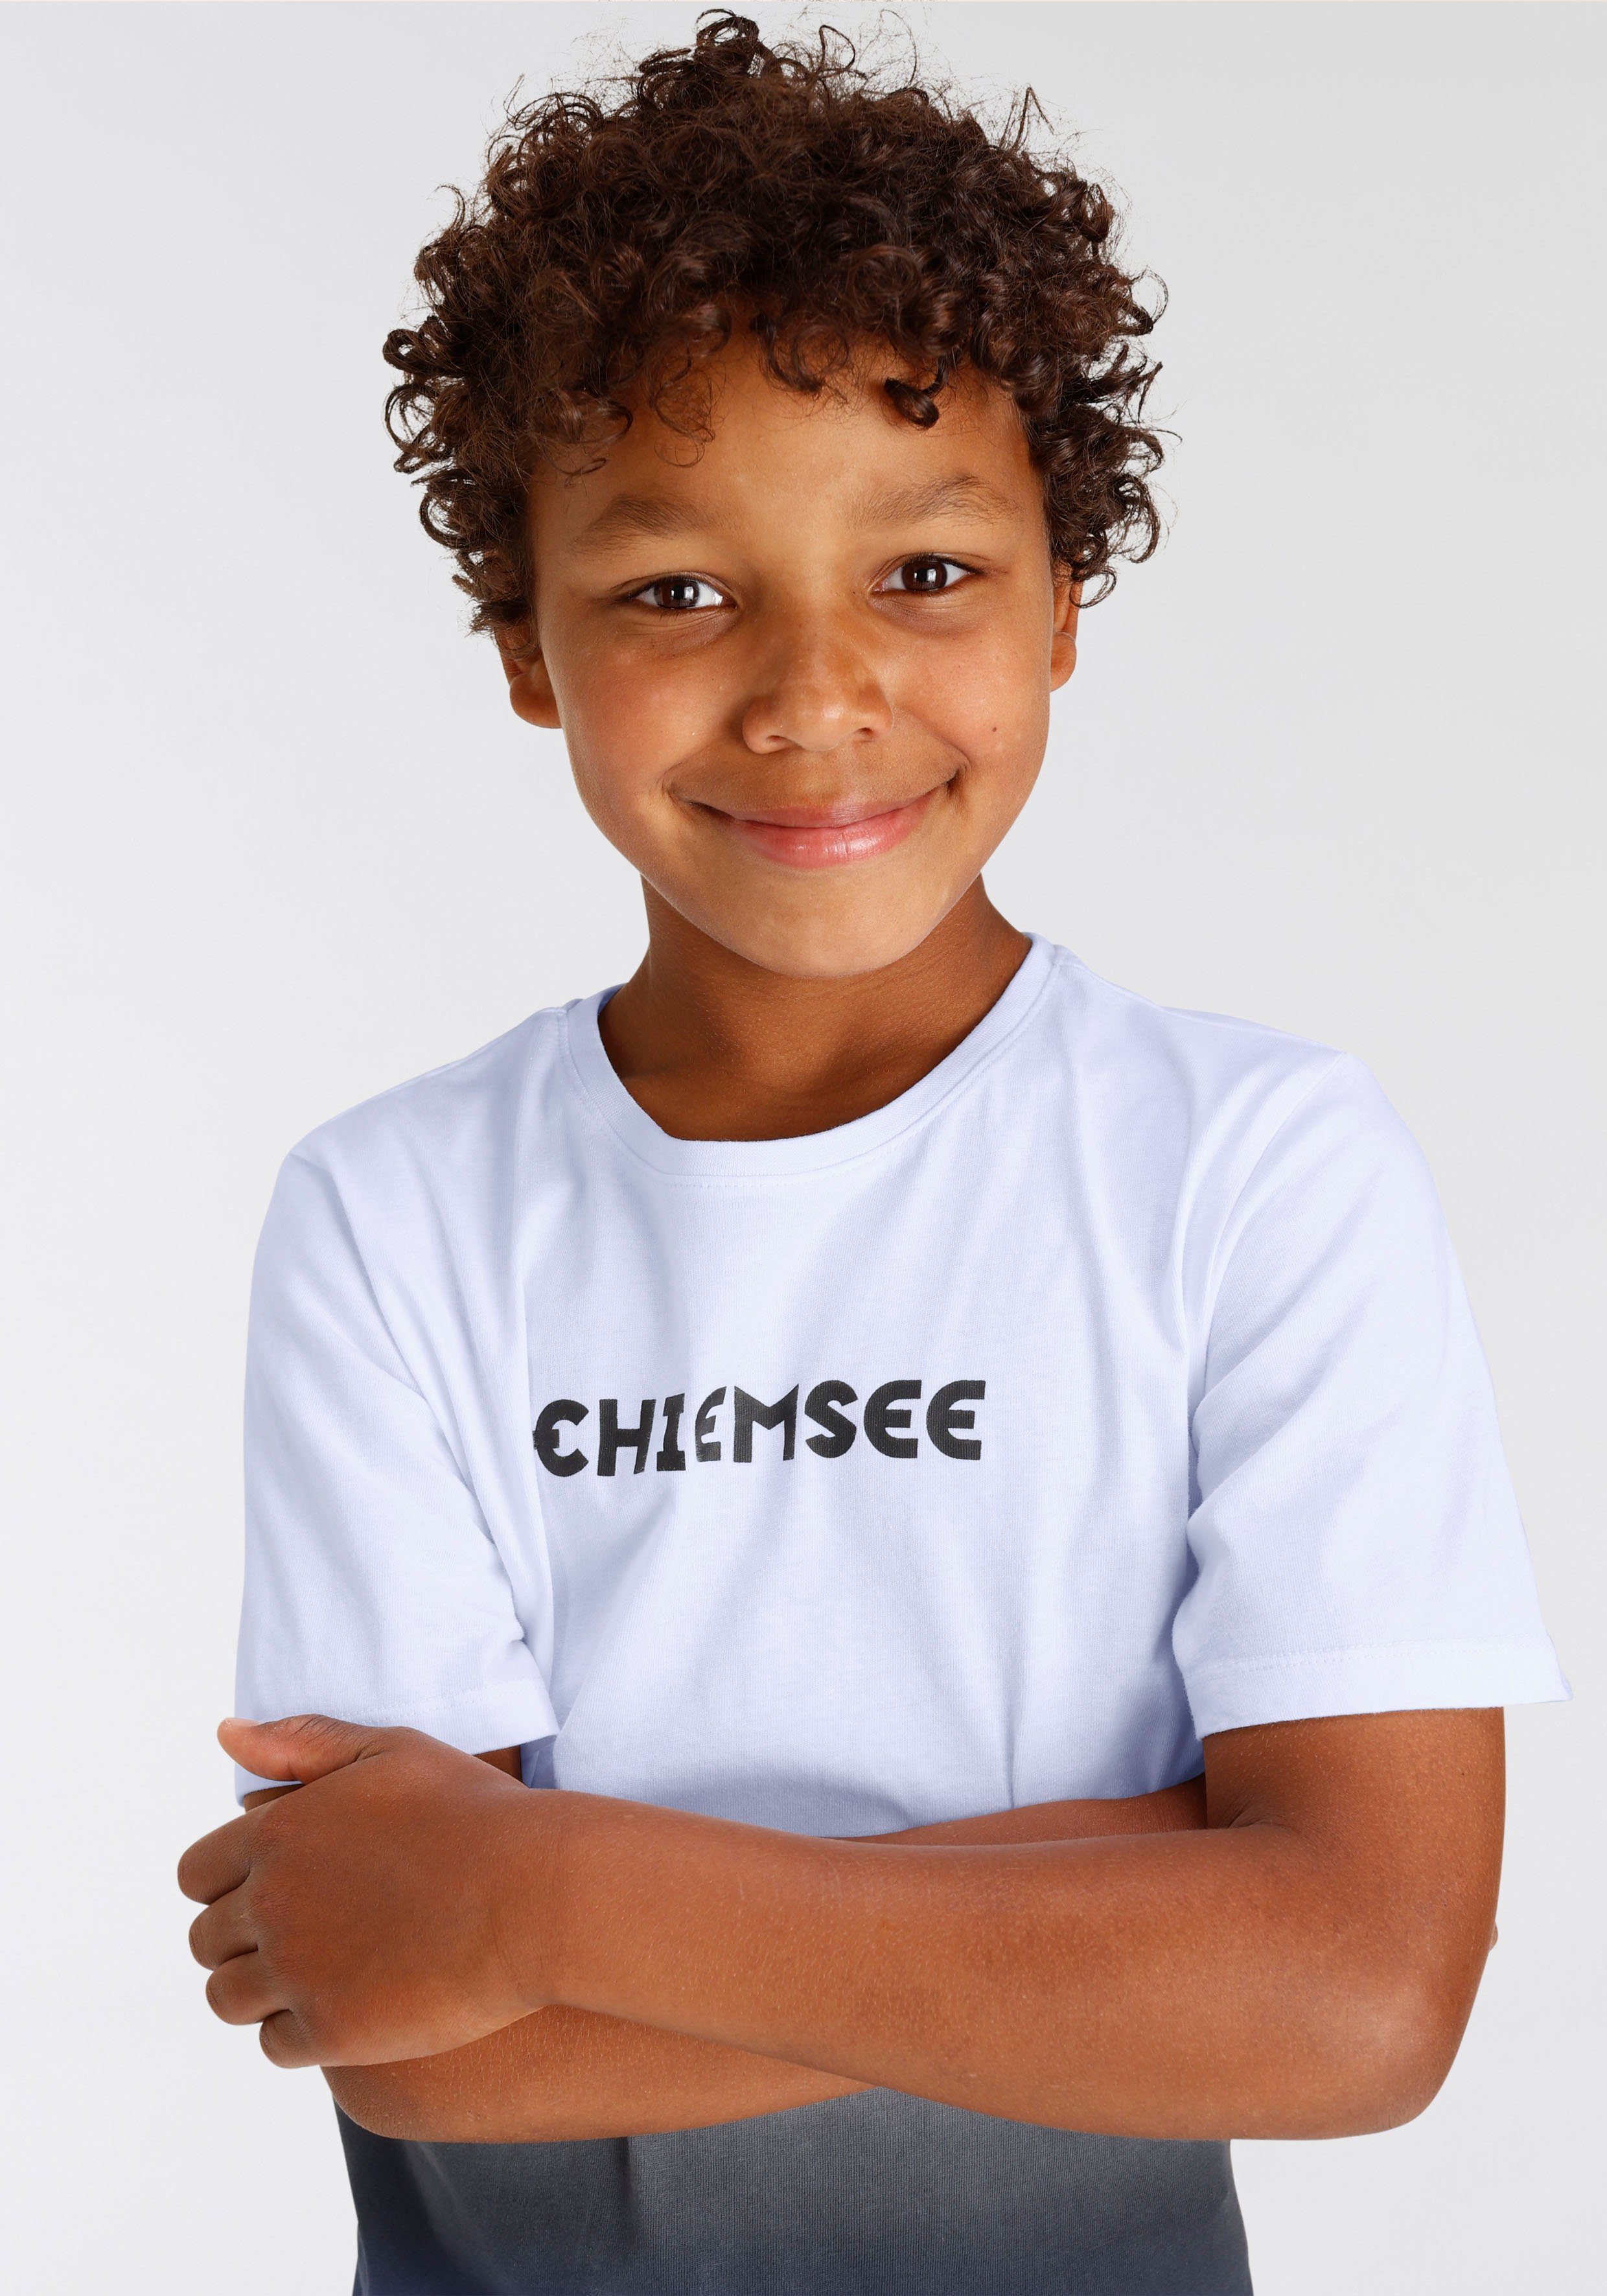 Farbverlauf Modischer Chiemsee T-Shirt